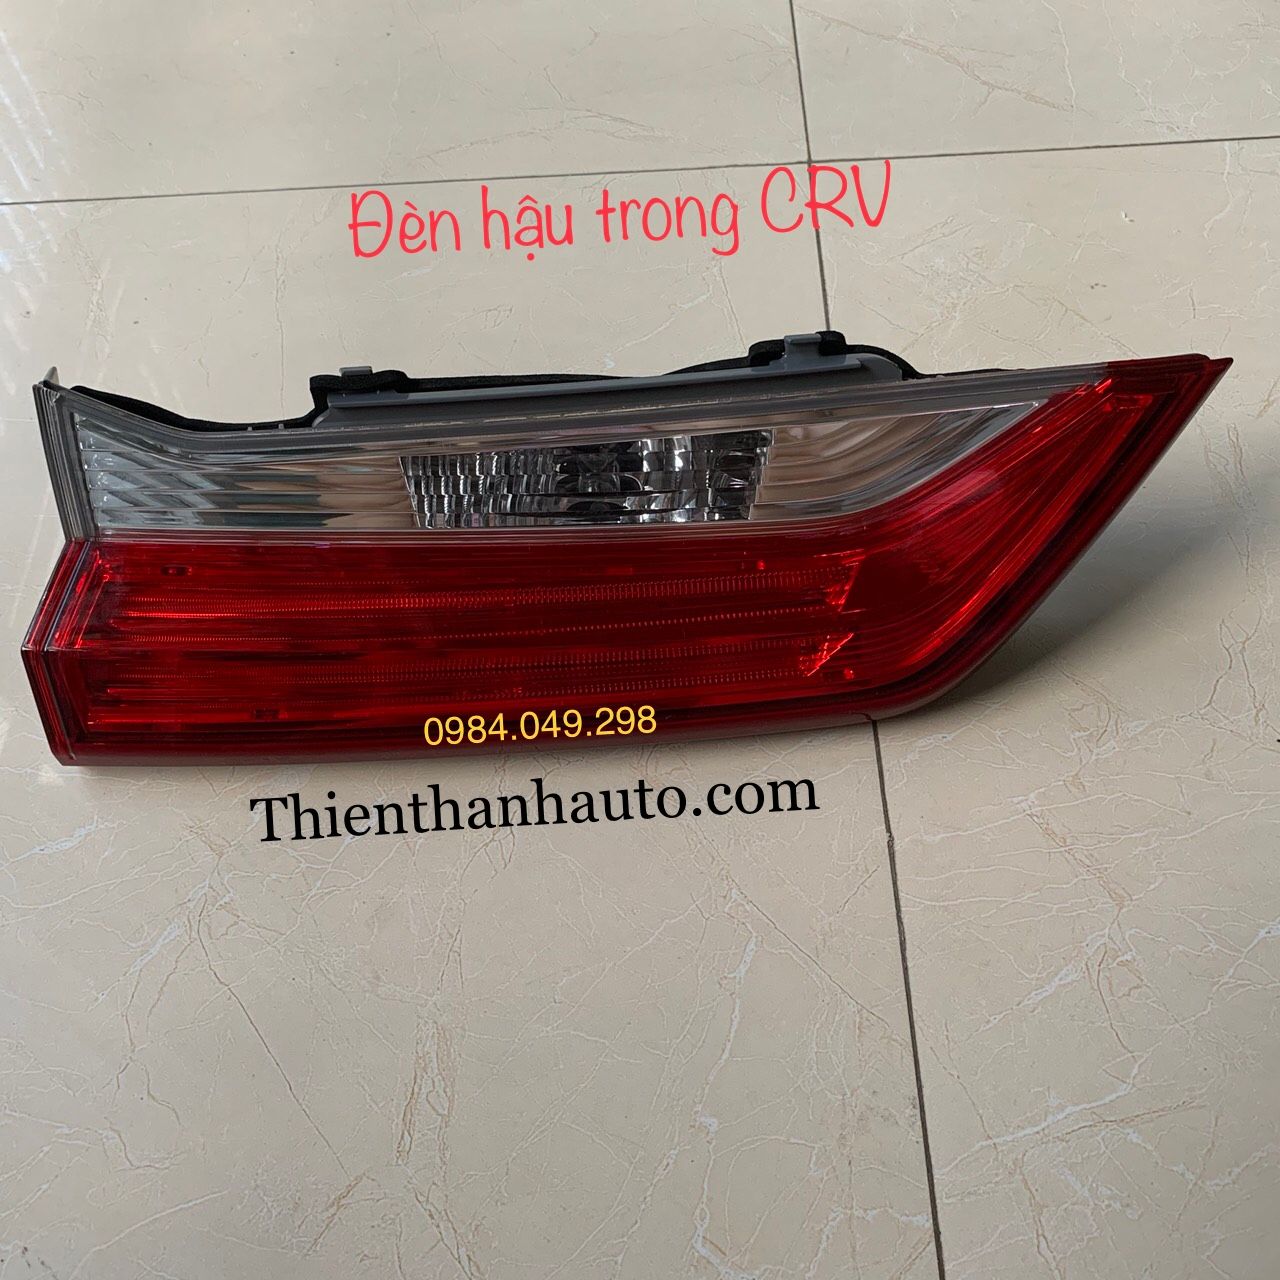 Đèn hậu trong - đèn hậu trên cốp Honda CRV 2017-2021 chính hãng - Thienthanhauto.com